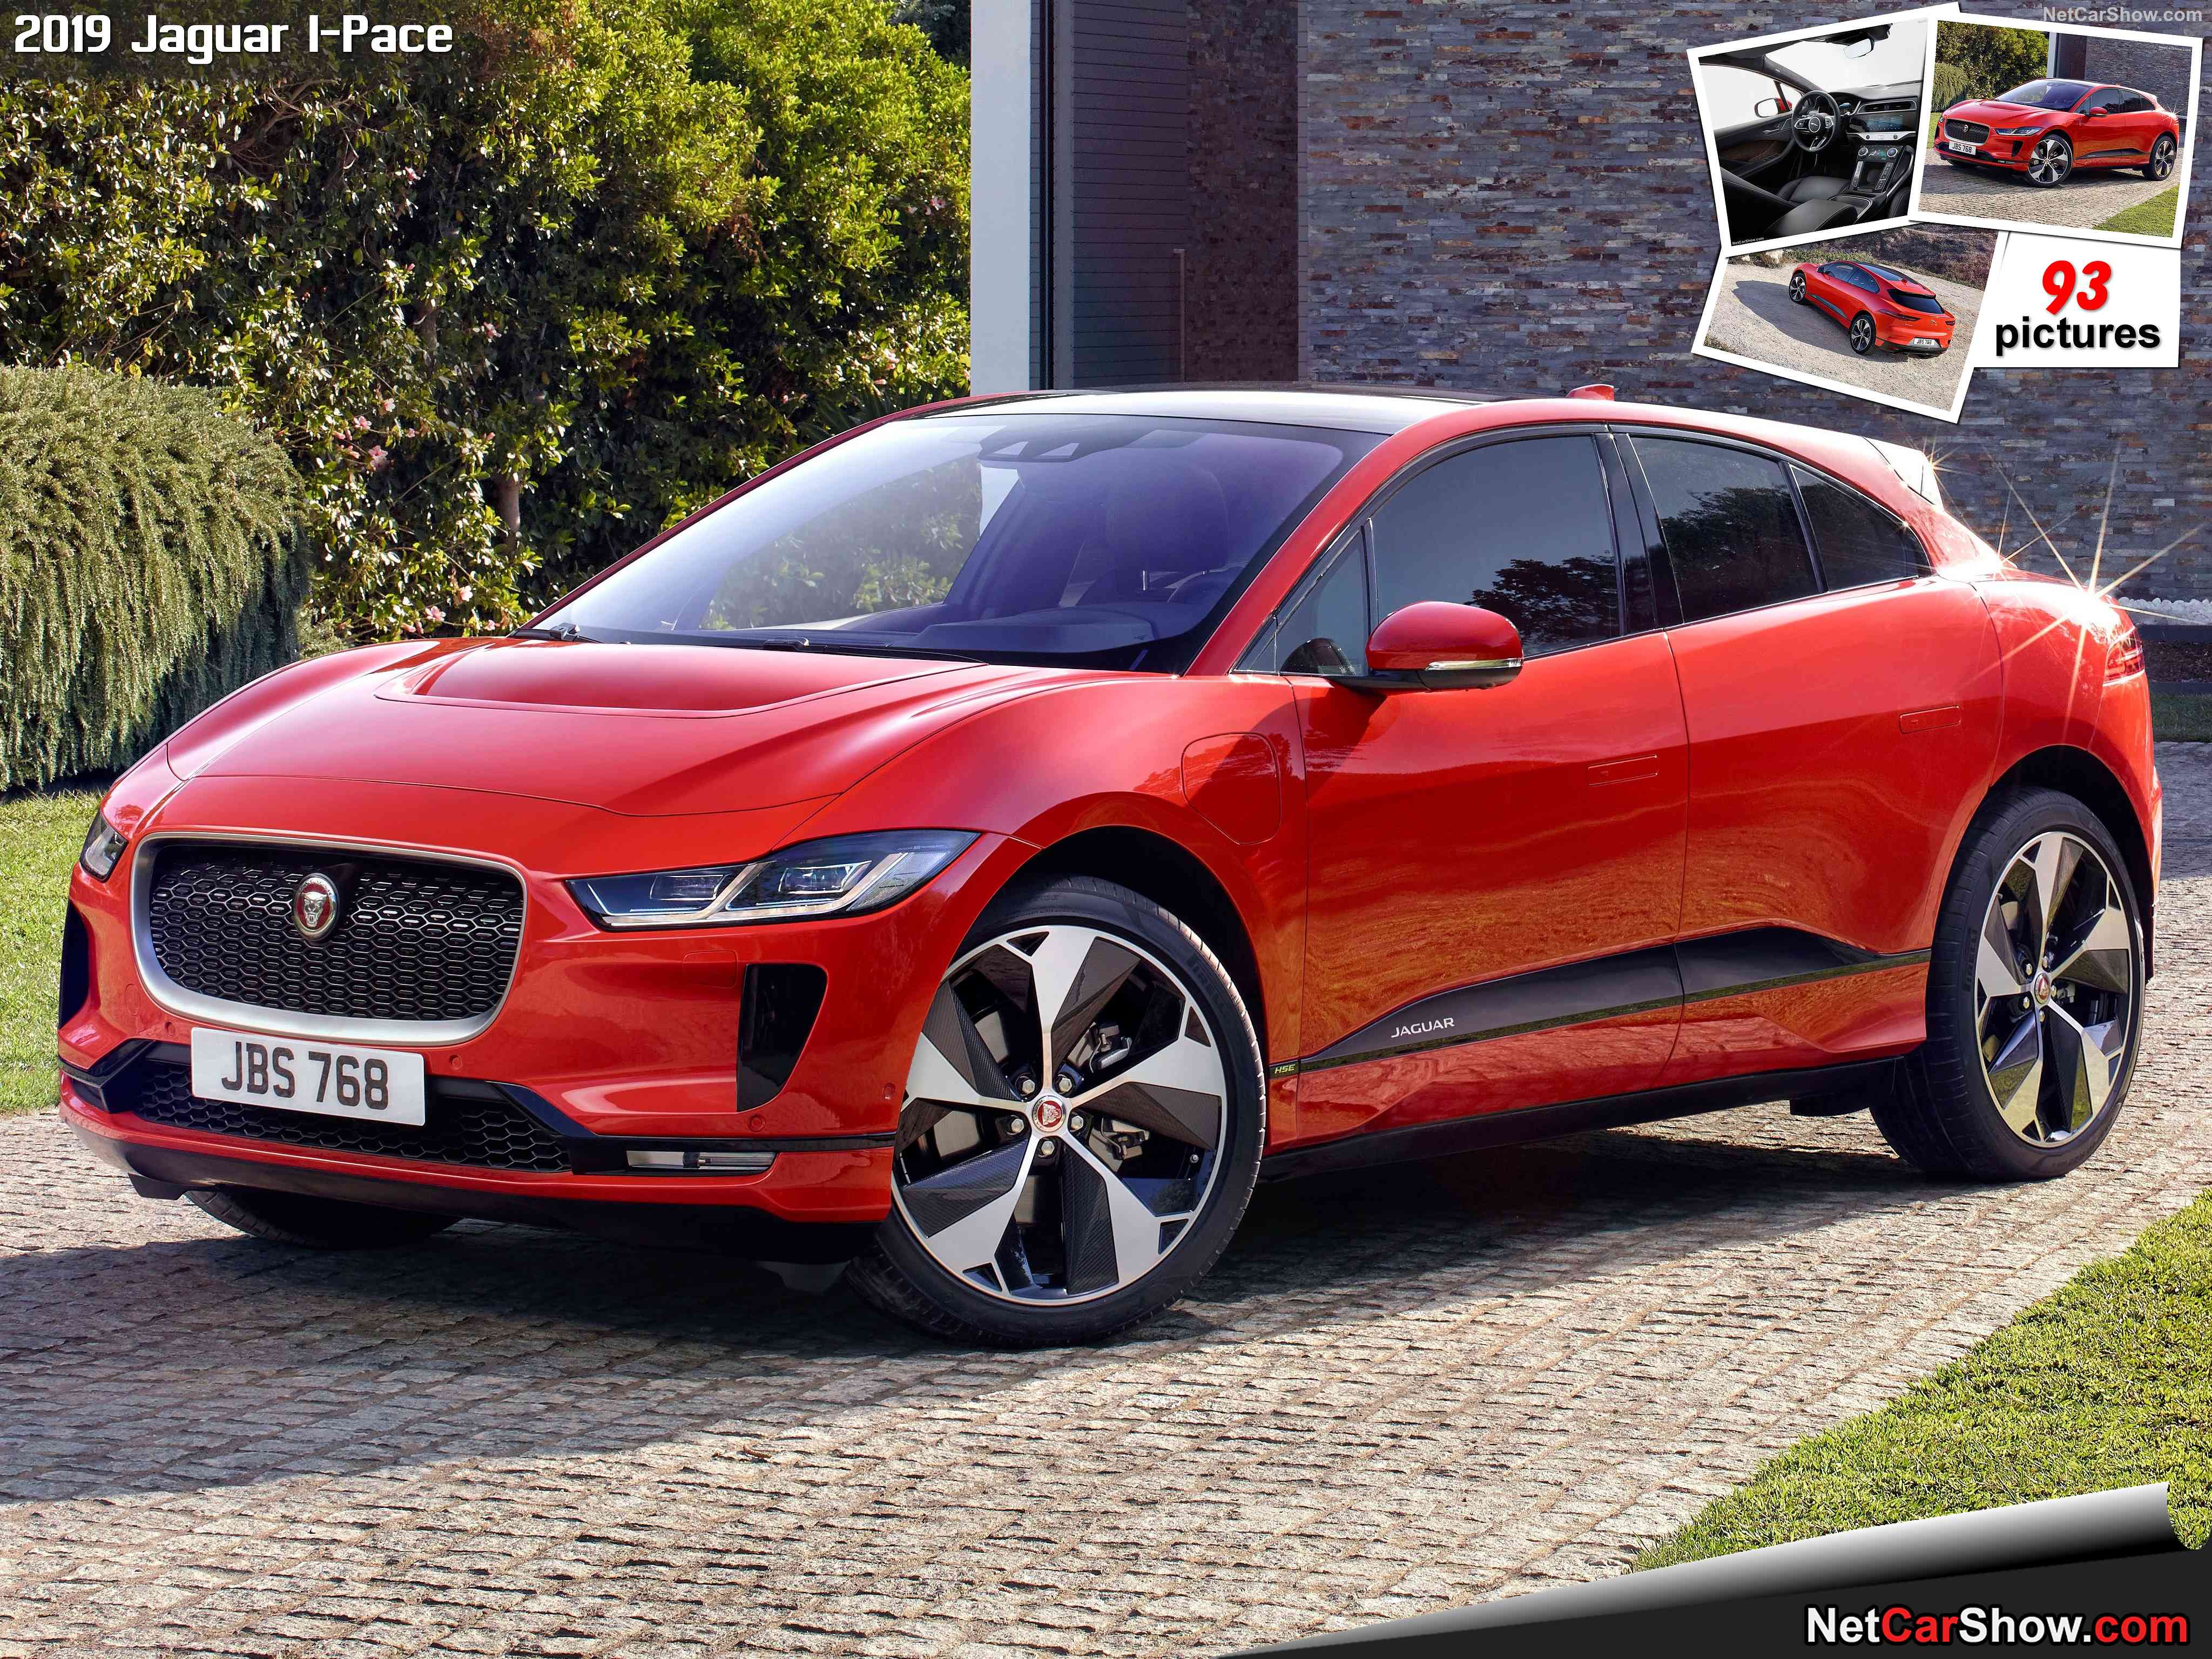 Jaguar I-PACE Electric Car Unveiled As A Tesla Rival